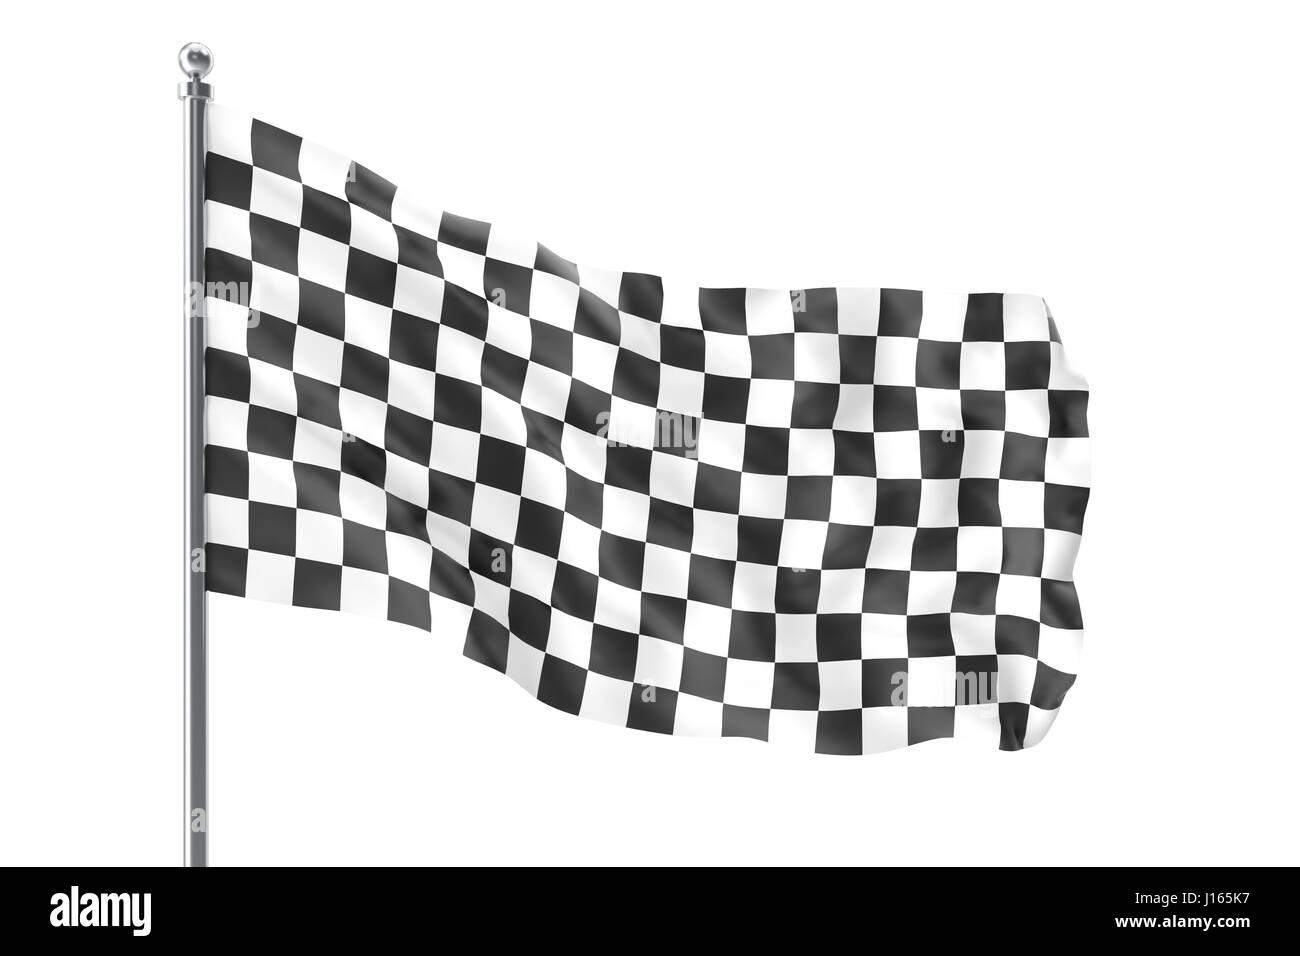 Pavillon de course mouvementée. La finition du drapeau à damier, rendu 3D isolé sur fond blanc Banque D'Images